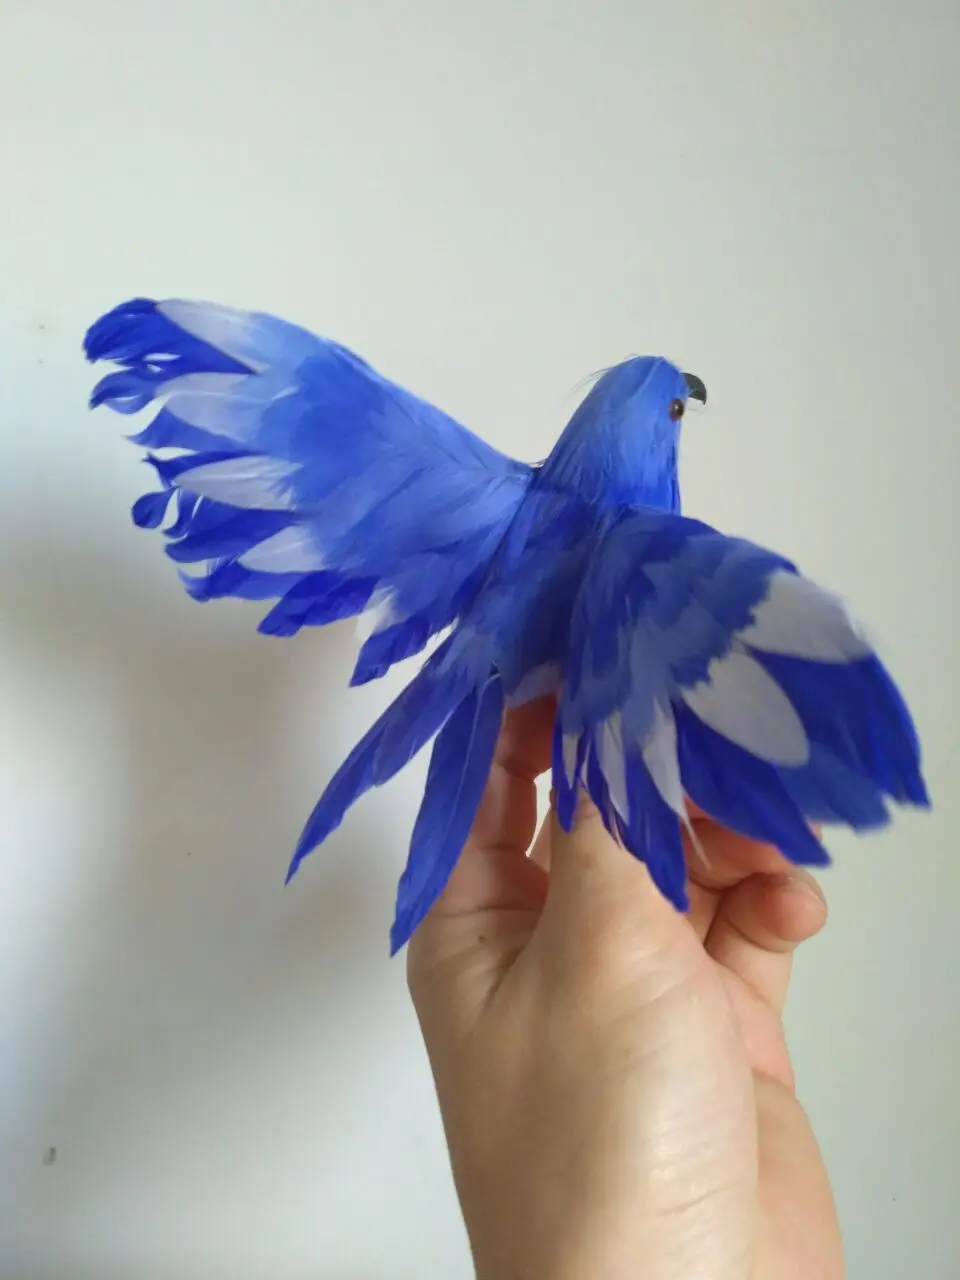 Симпатичные Моделирование крылья птицы модель полиэтилен и меха синяя птица кукла подарок около 12 см 1257